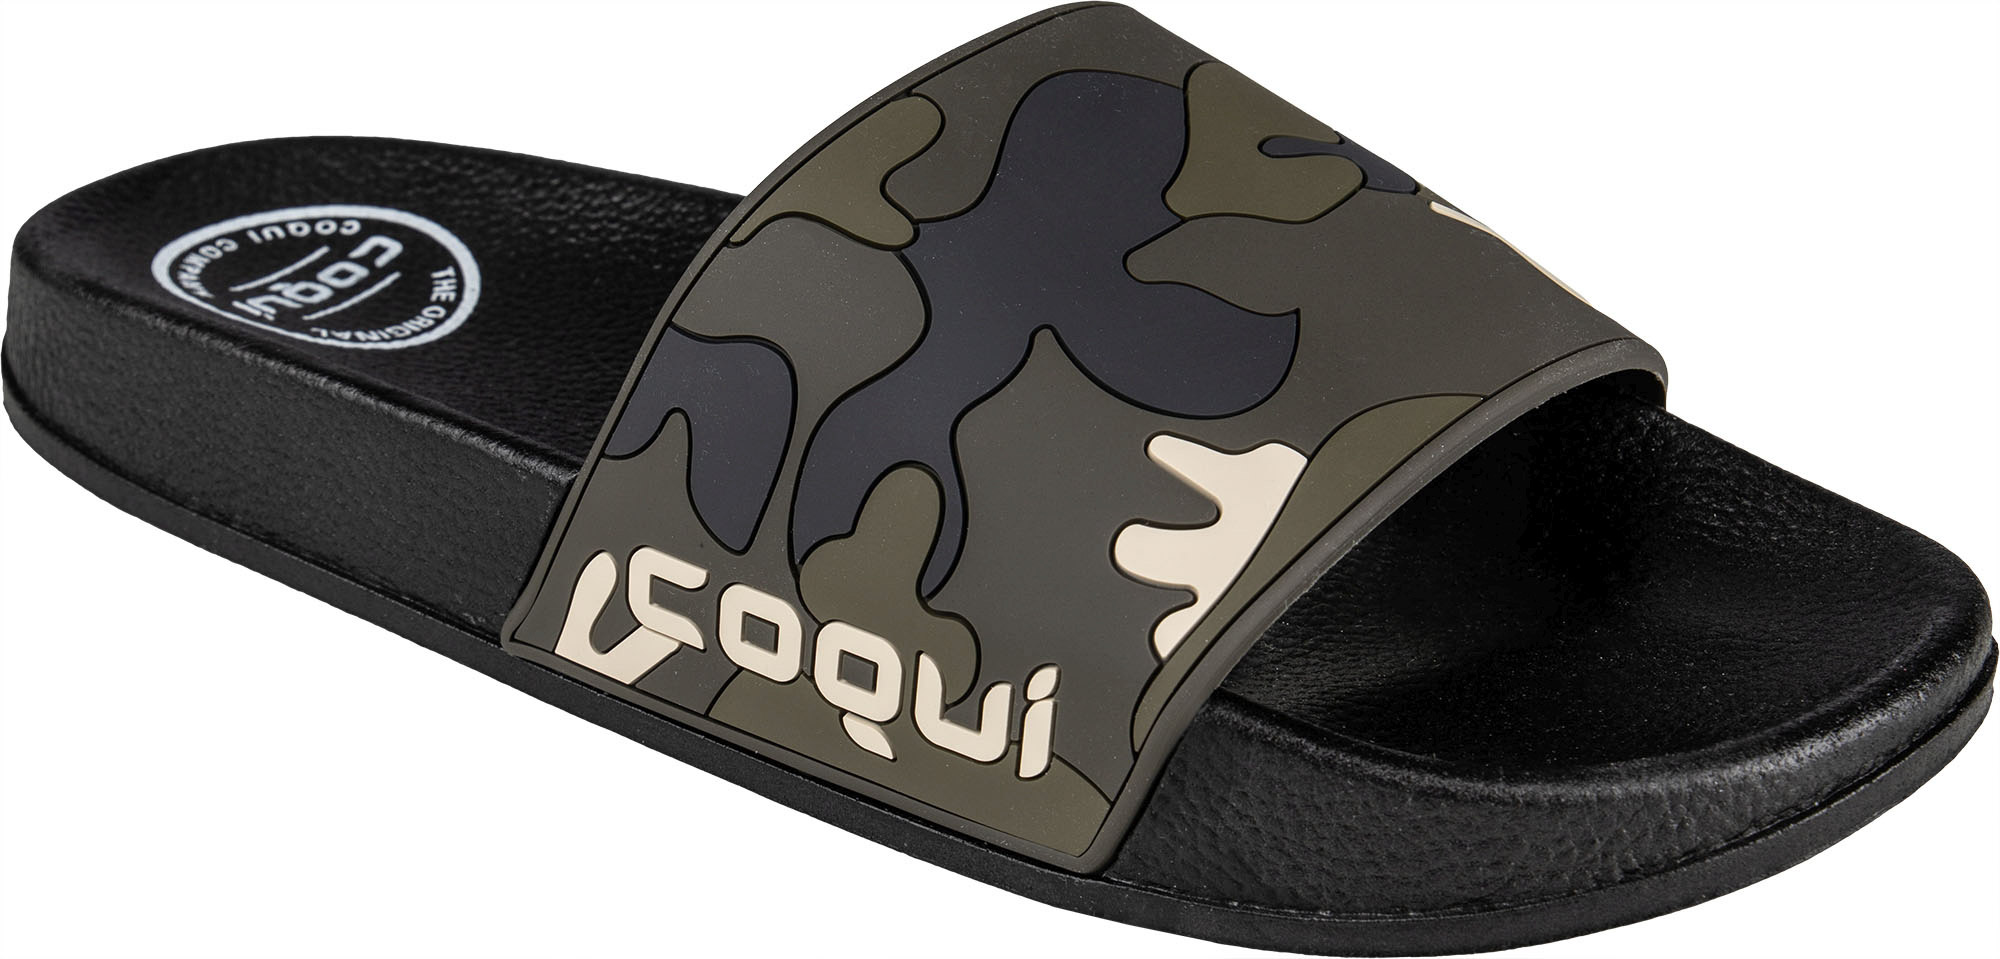 Pánské pantofle Coqui Flexi 6261 Black-Army green camo|43